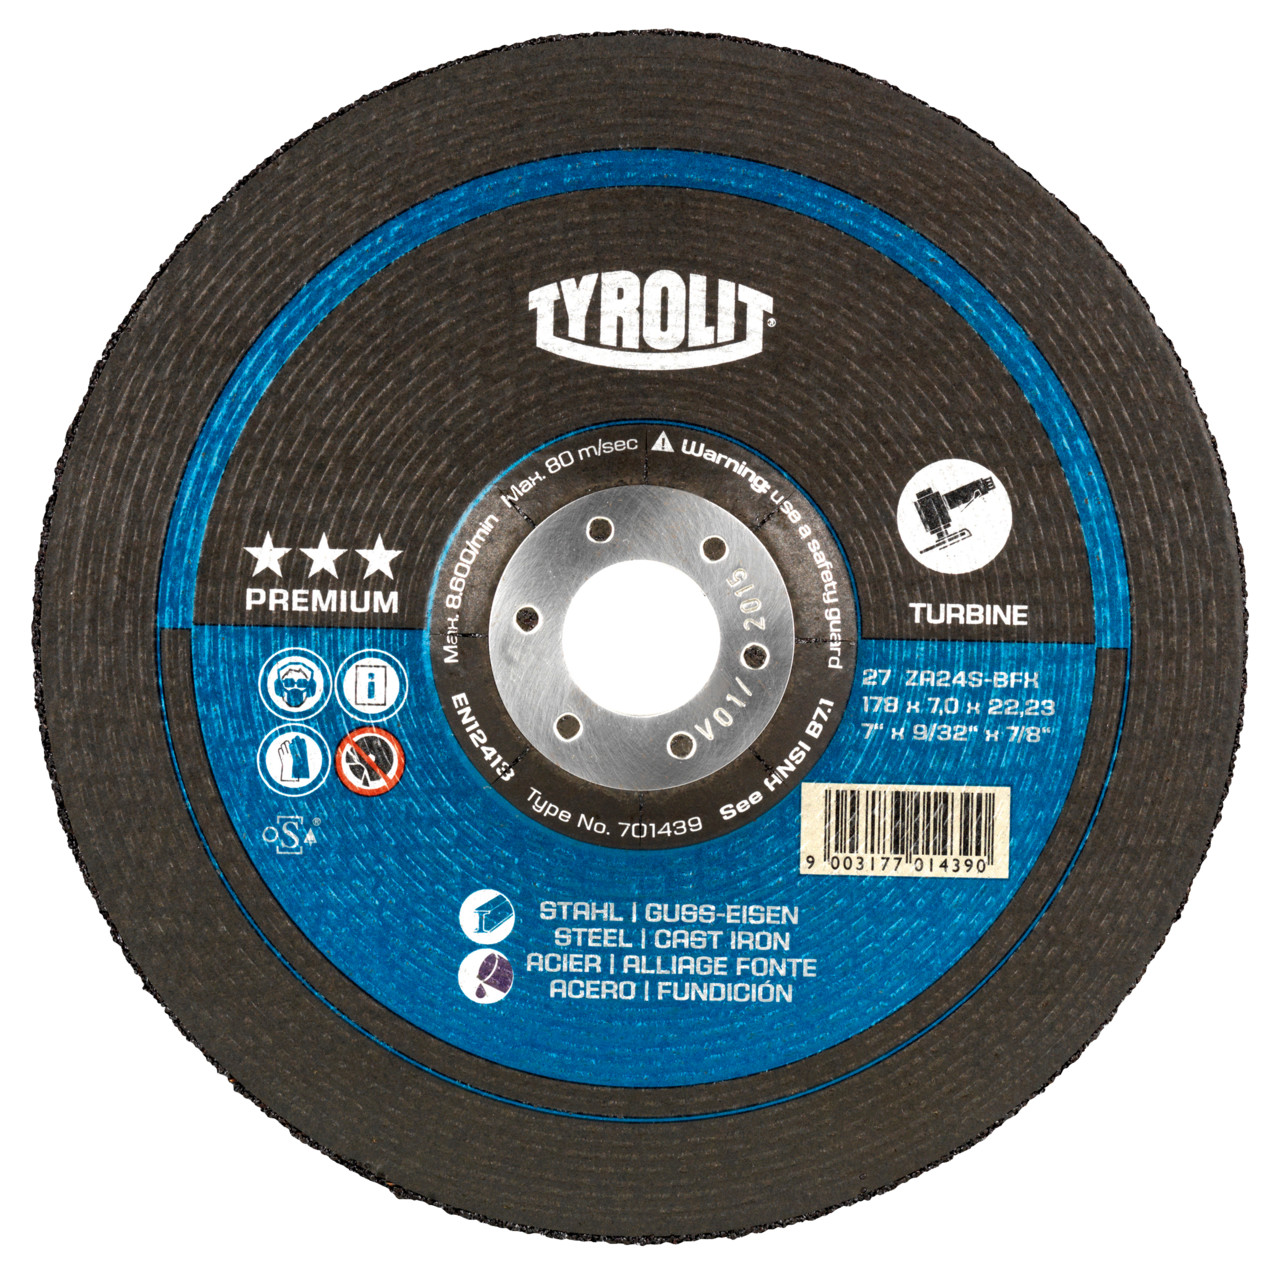 TYROLIT disco de desbaste DxUxH 125x7x22,23 T-GRIND para acero y fundición, forma: 27 - diseño offset, Art. 701518